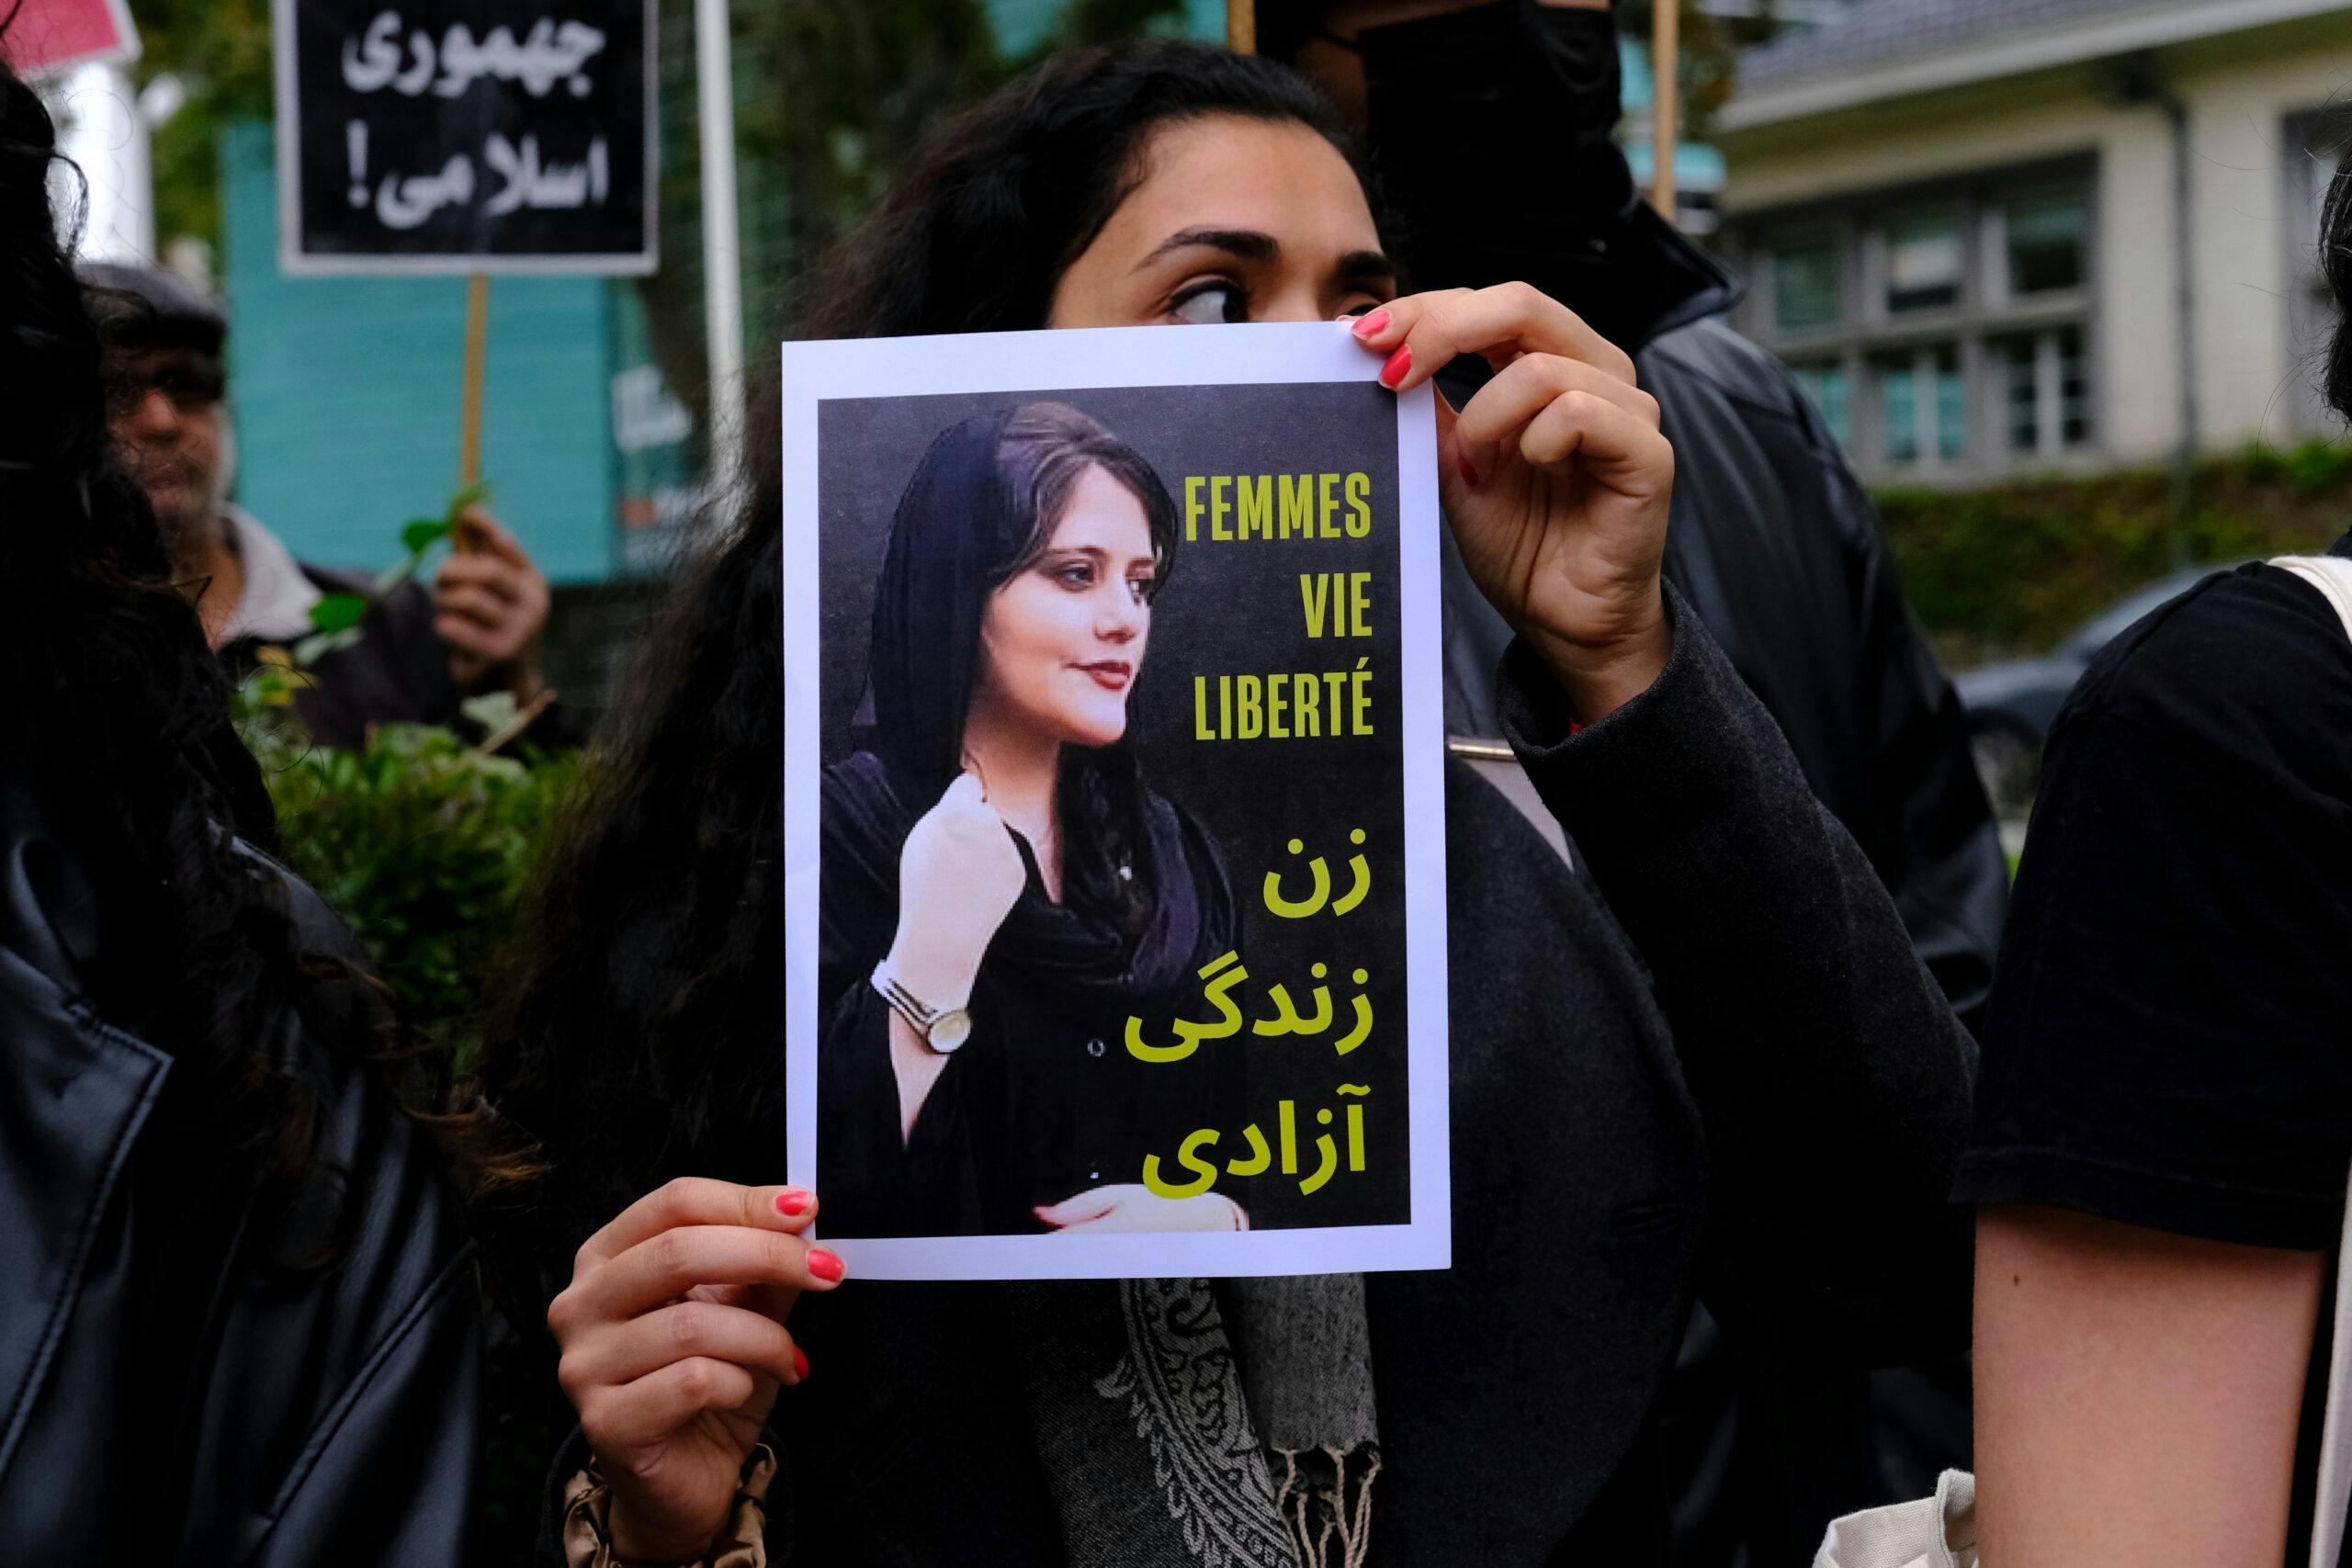 تصویر تزئینی از یک راهپیمایی جنبش زن، زندگی، آزادی. یک زن صفحه‌ای پرینت شده با همین شعار را در دست دارد و پشت سر او یک کاغذ دیگر نوشته جمهوری اسلامی!